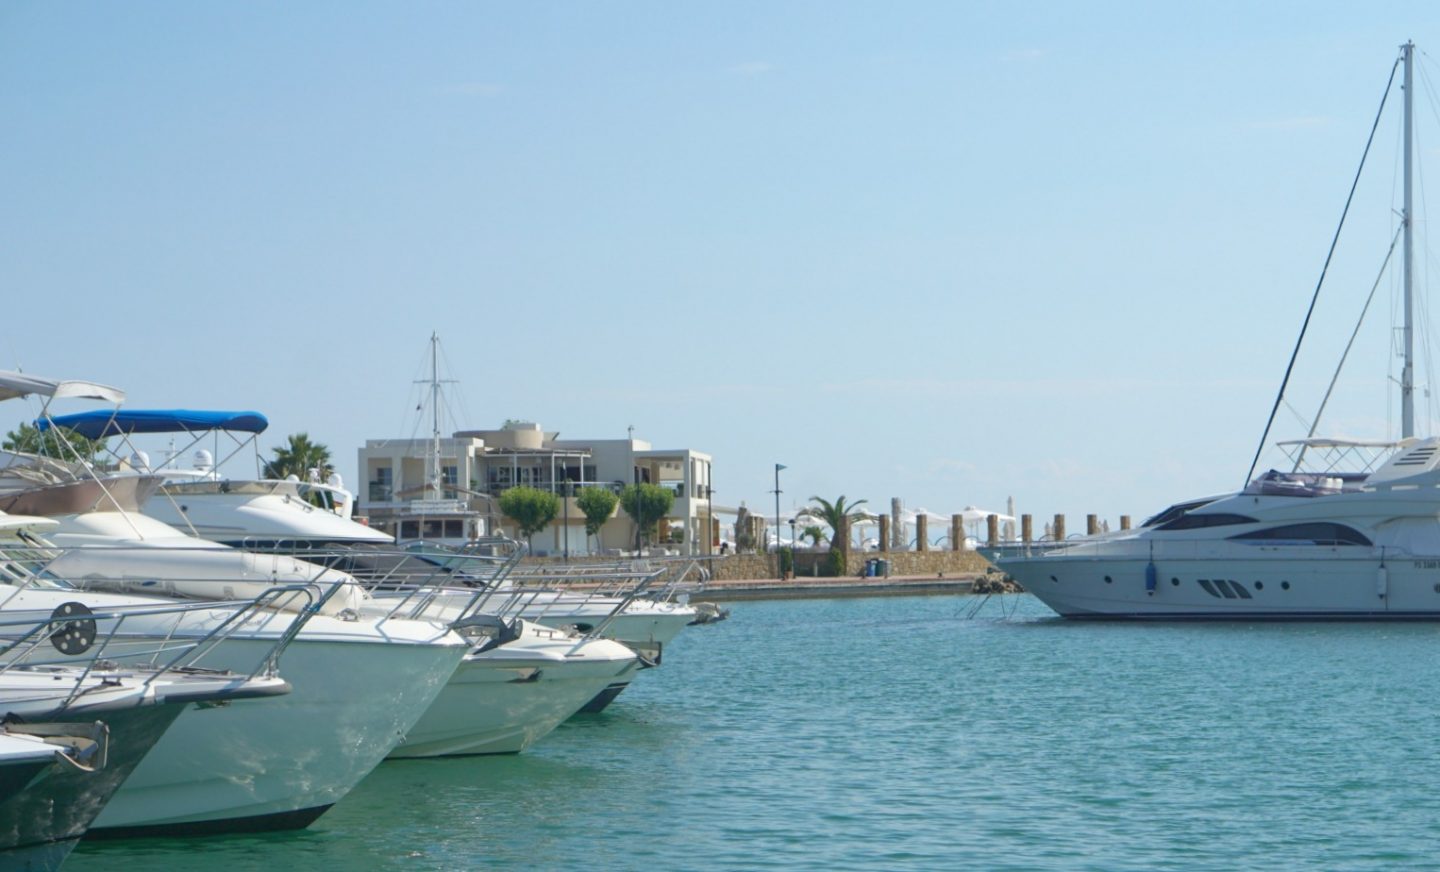 The Marina at Sani Resort Halkidiki Greece extraordinarychaos.com